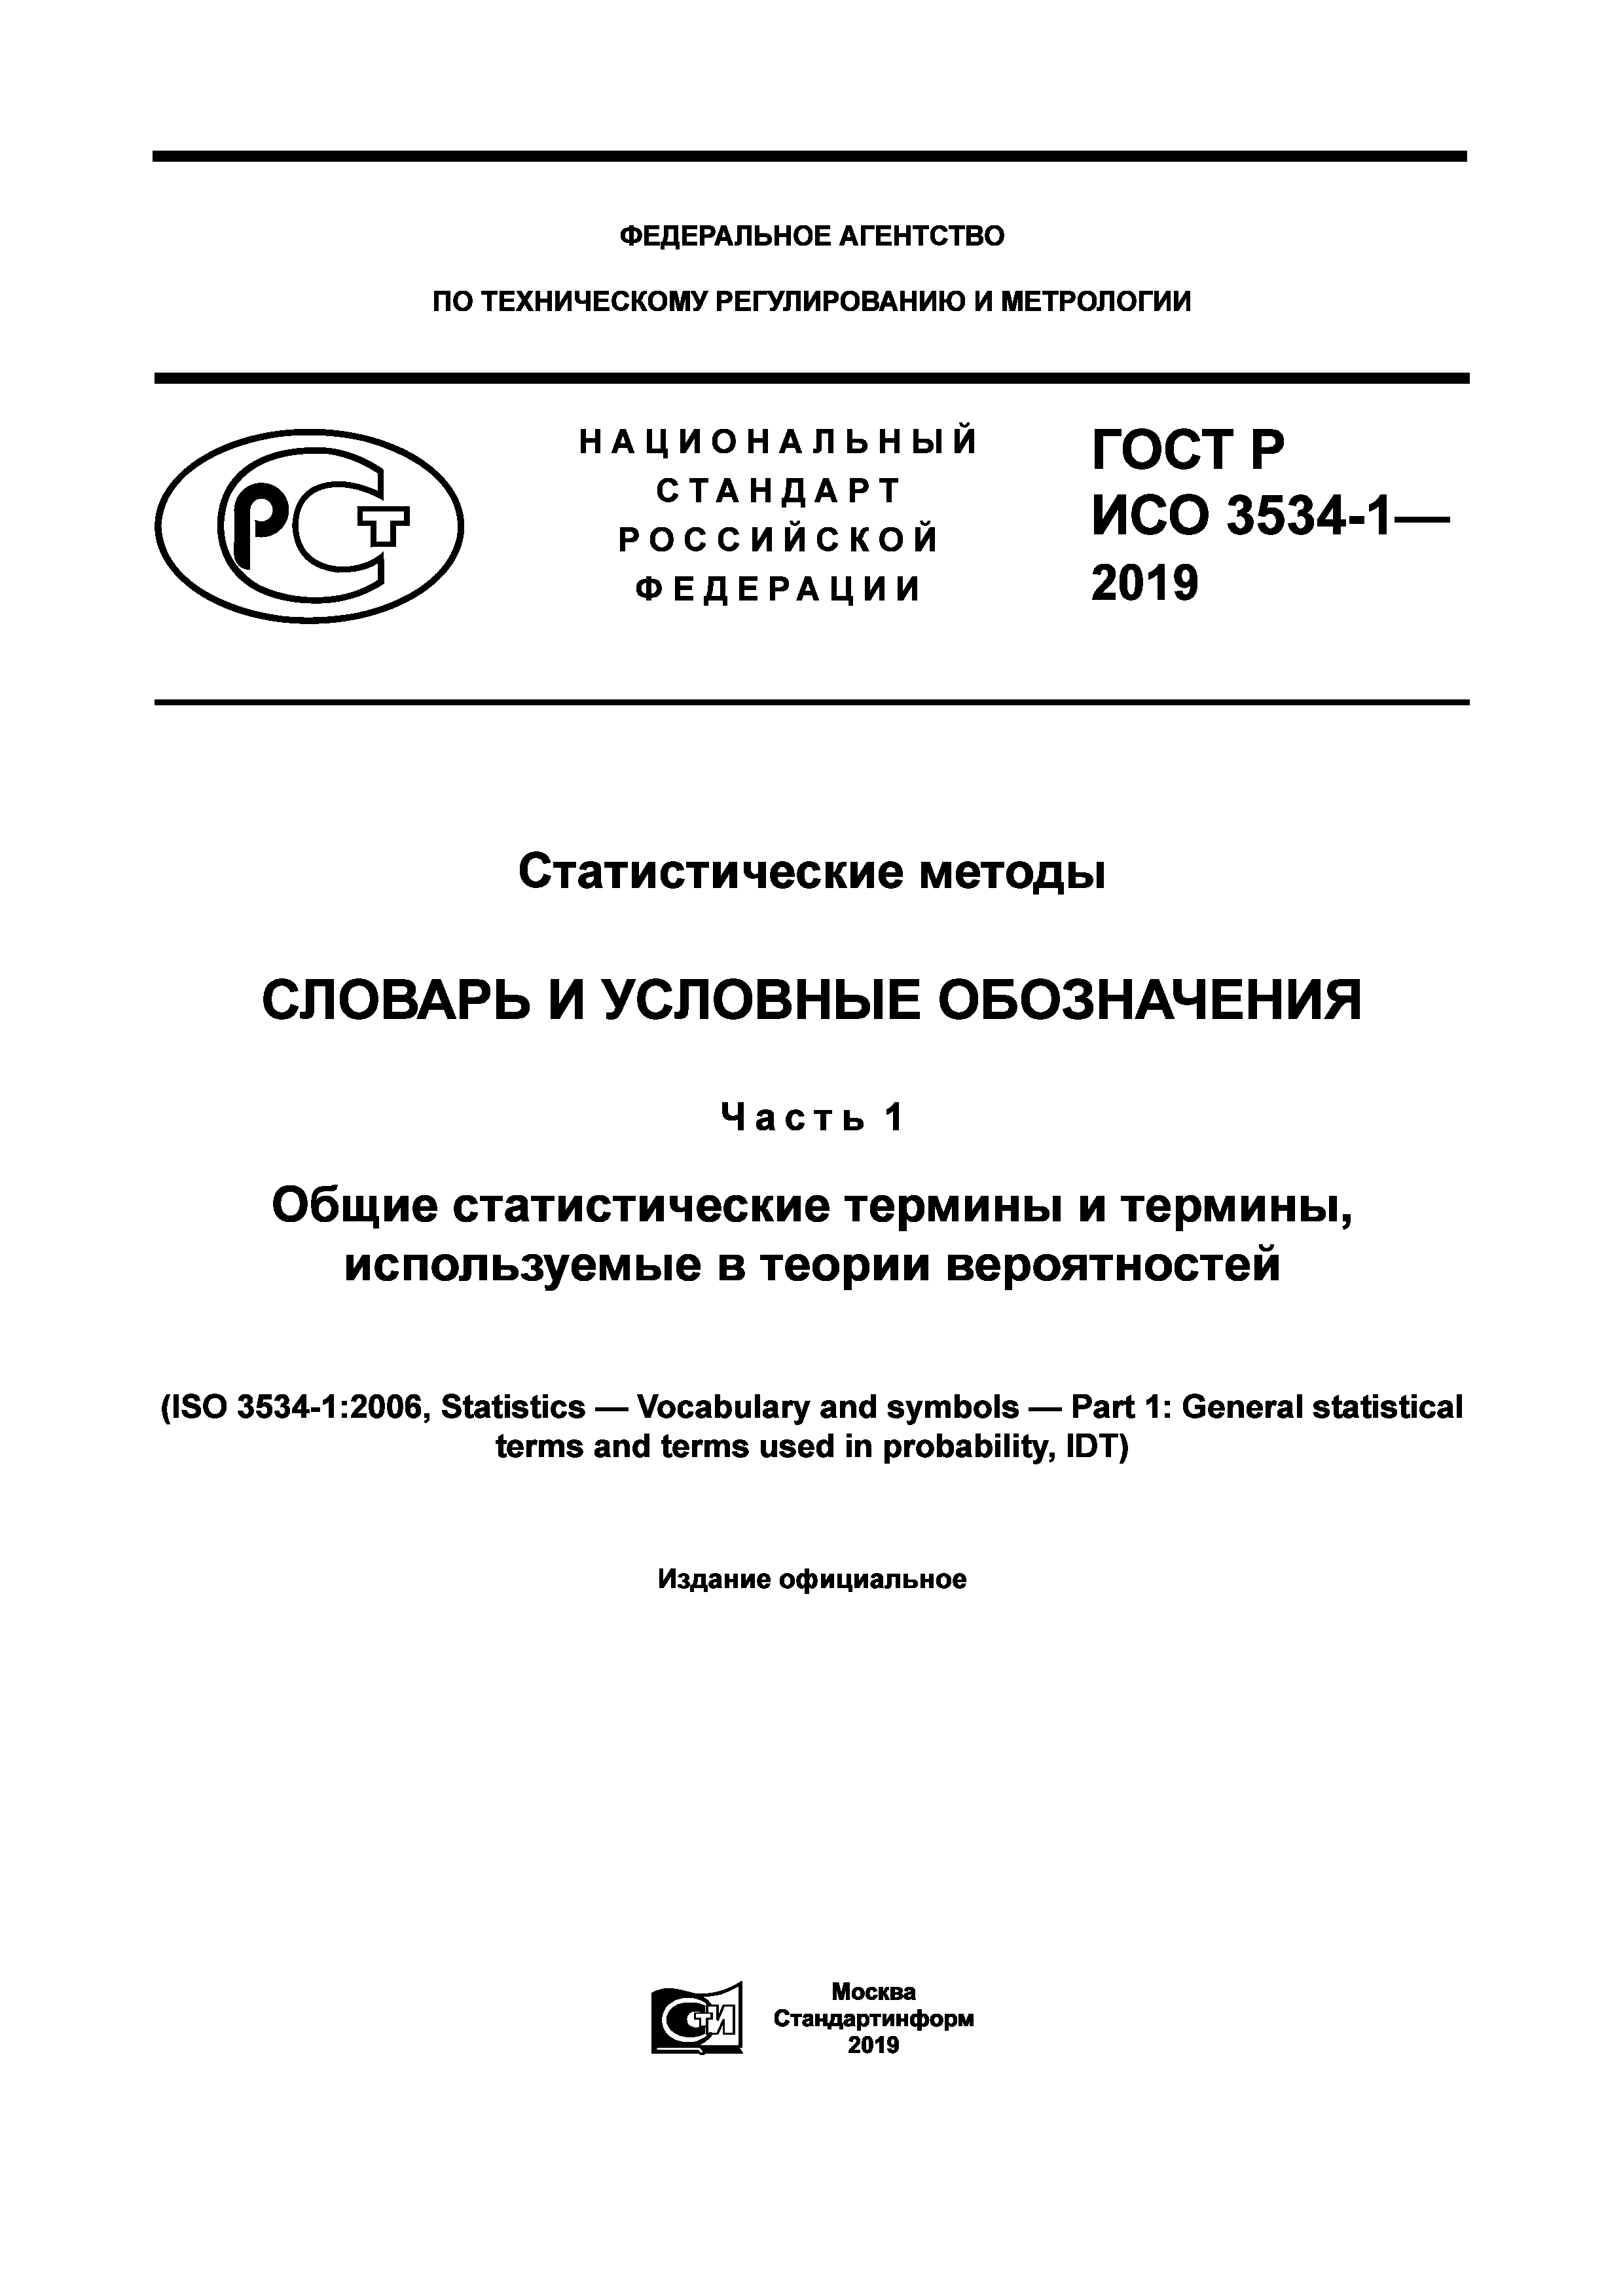 ГОСТ Р ИСО 3534-1-2019